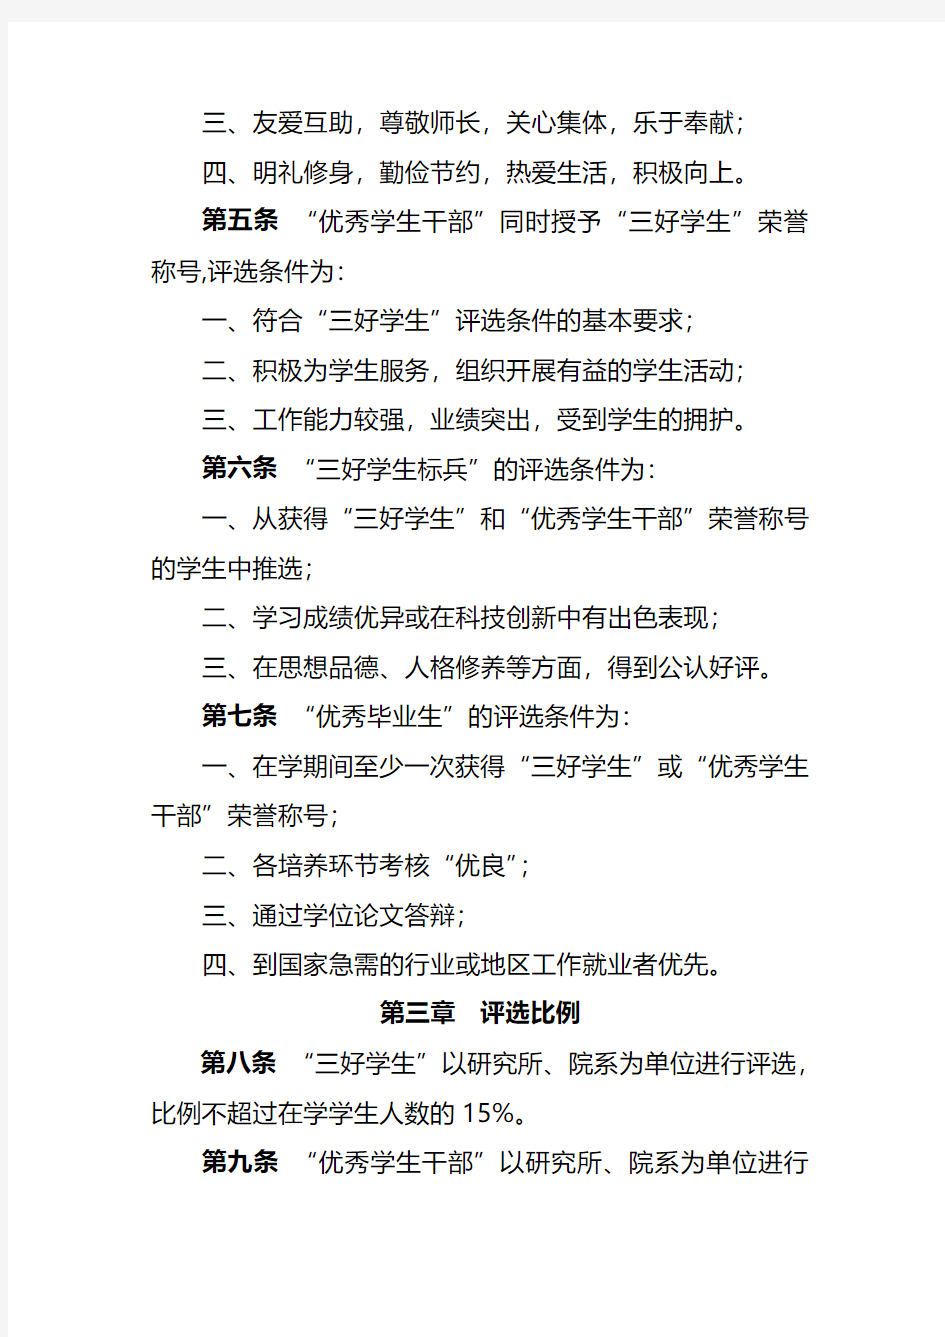 中国科学院研究生院优秀学生评选条例